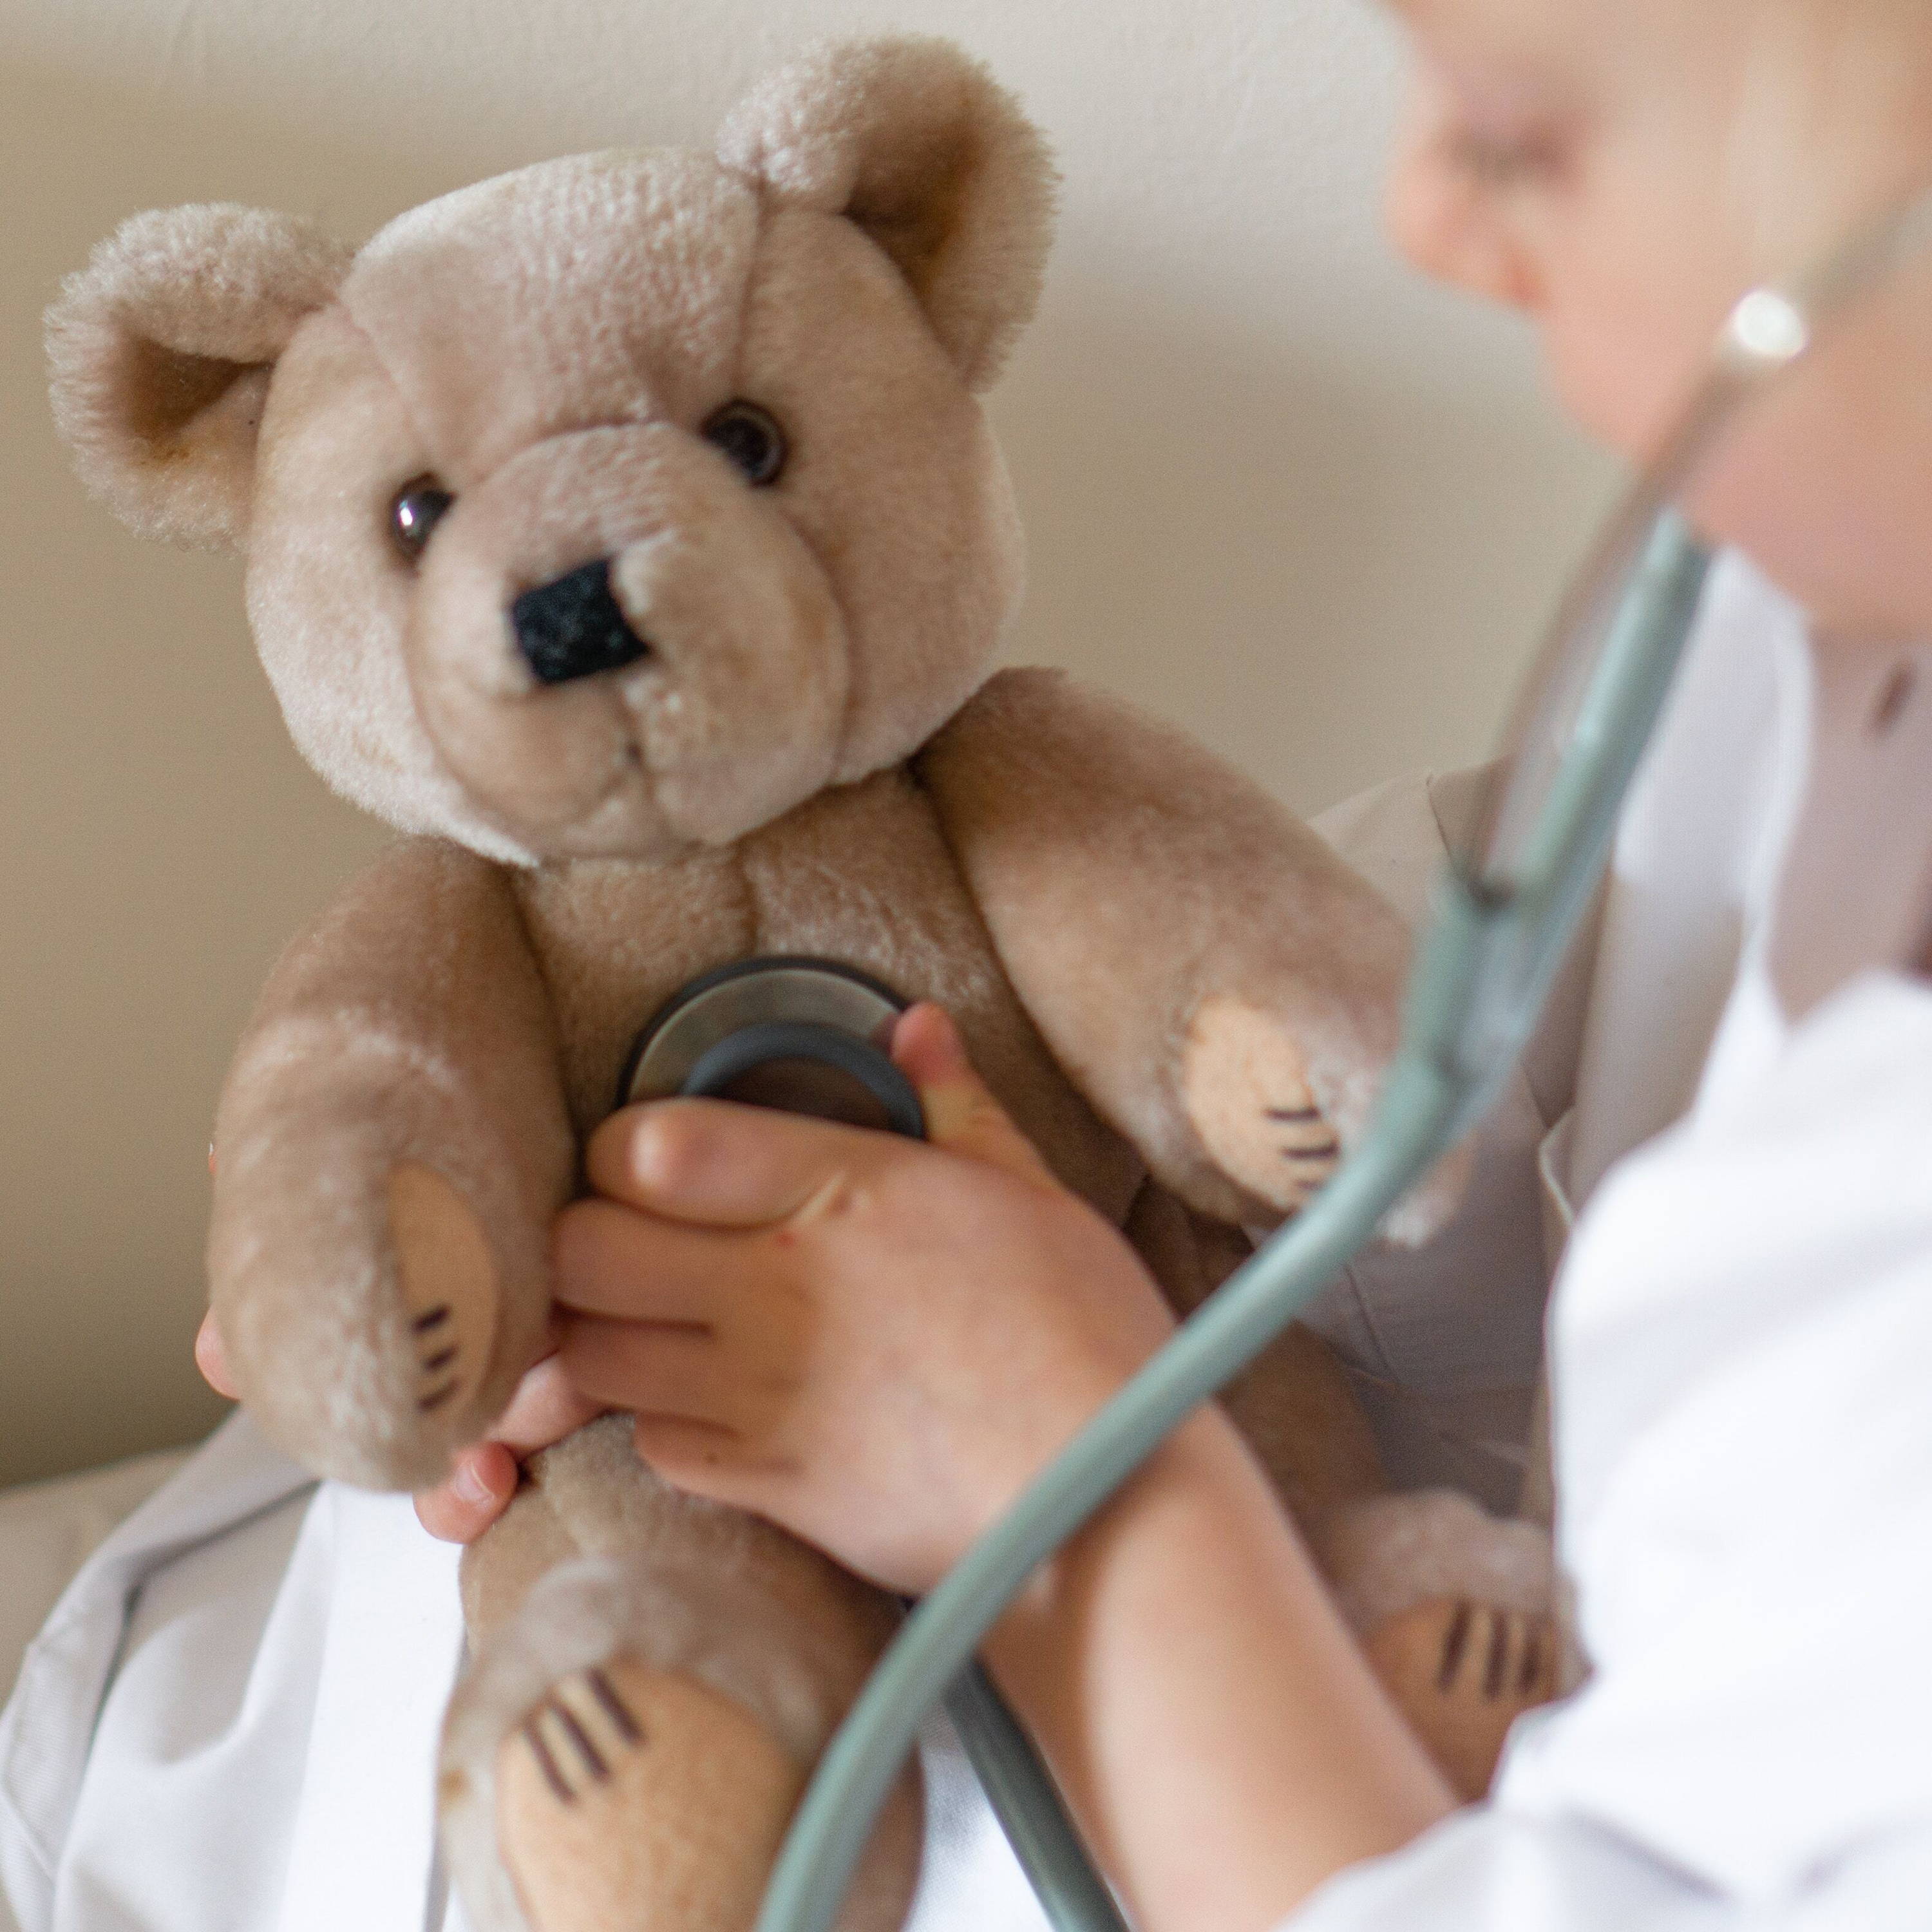 Enfant portant une blouse blanche jouant au médecin - il utilise un stéthoscope pour examiner son ourson en peluche